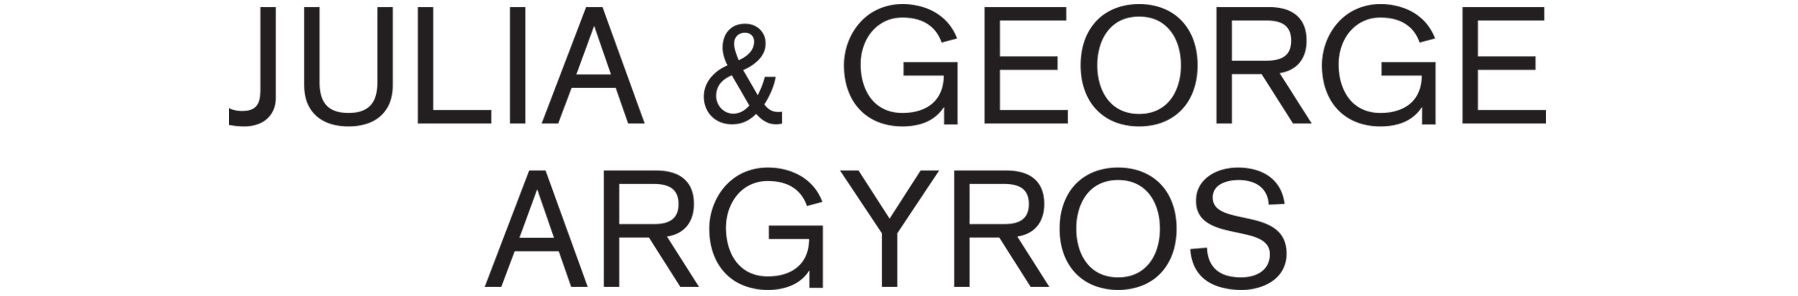 argyros logo